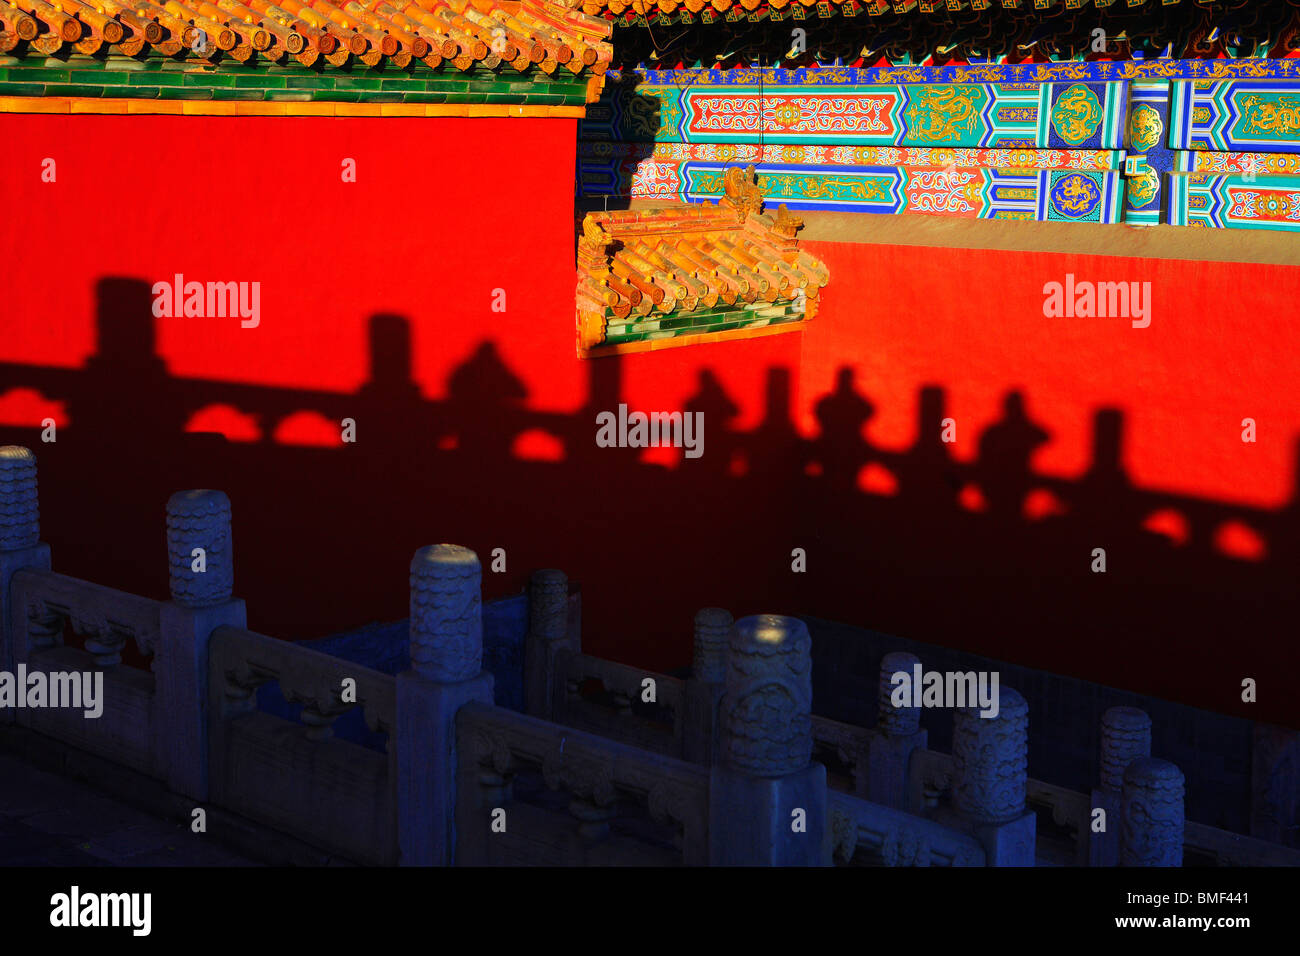 Ombra di ringhiera in marmo rosso sulla parete del palazzo, la Città Proibita di Pechino, Cina Foto Stock